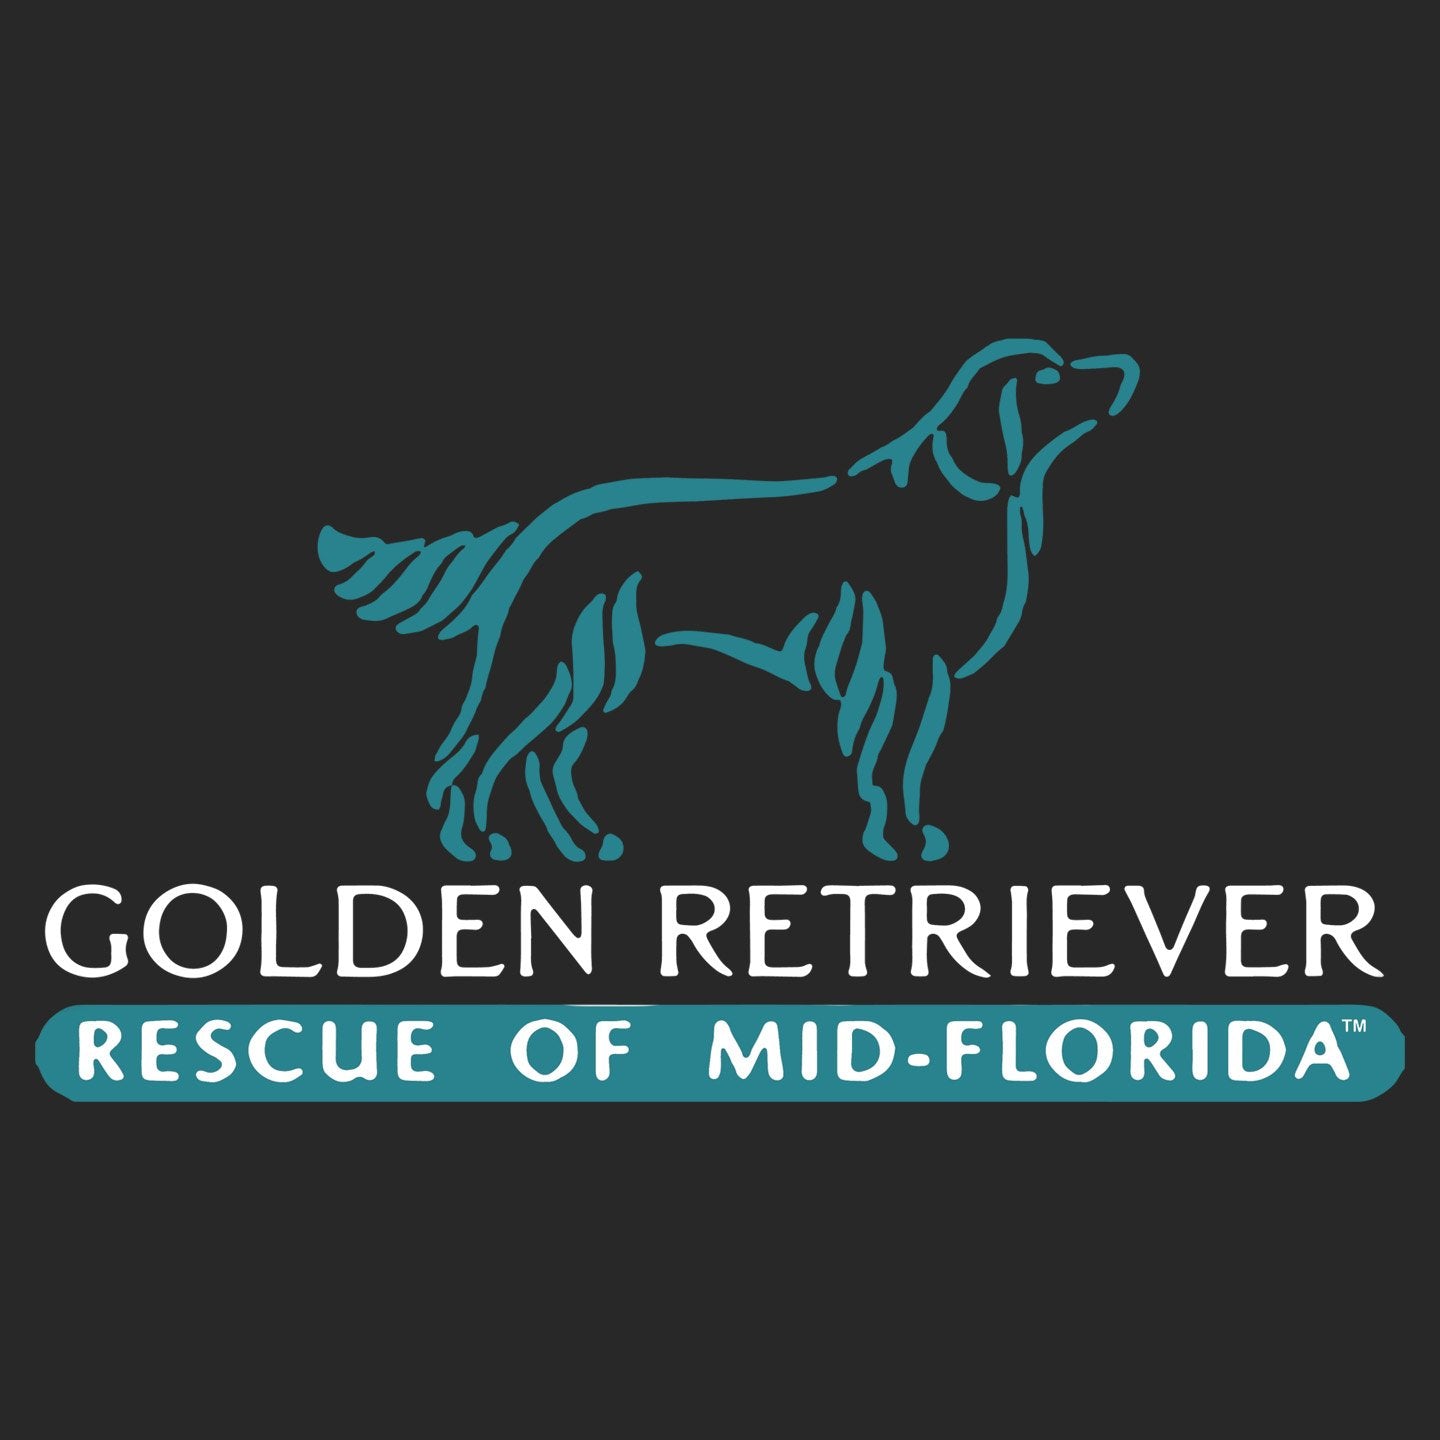 Golden Retriever Rescue of Mid-Florida Logo Left Side - Adult Adjustable Face Mask